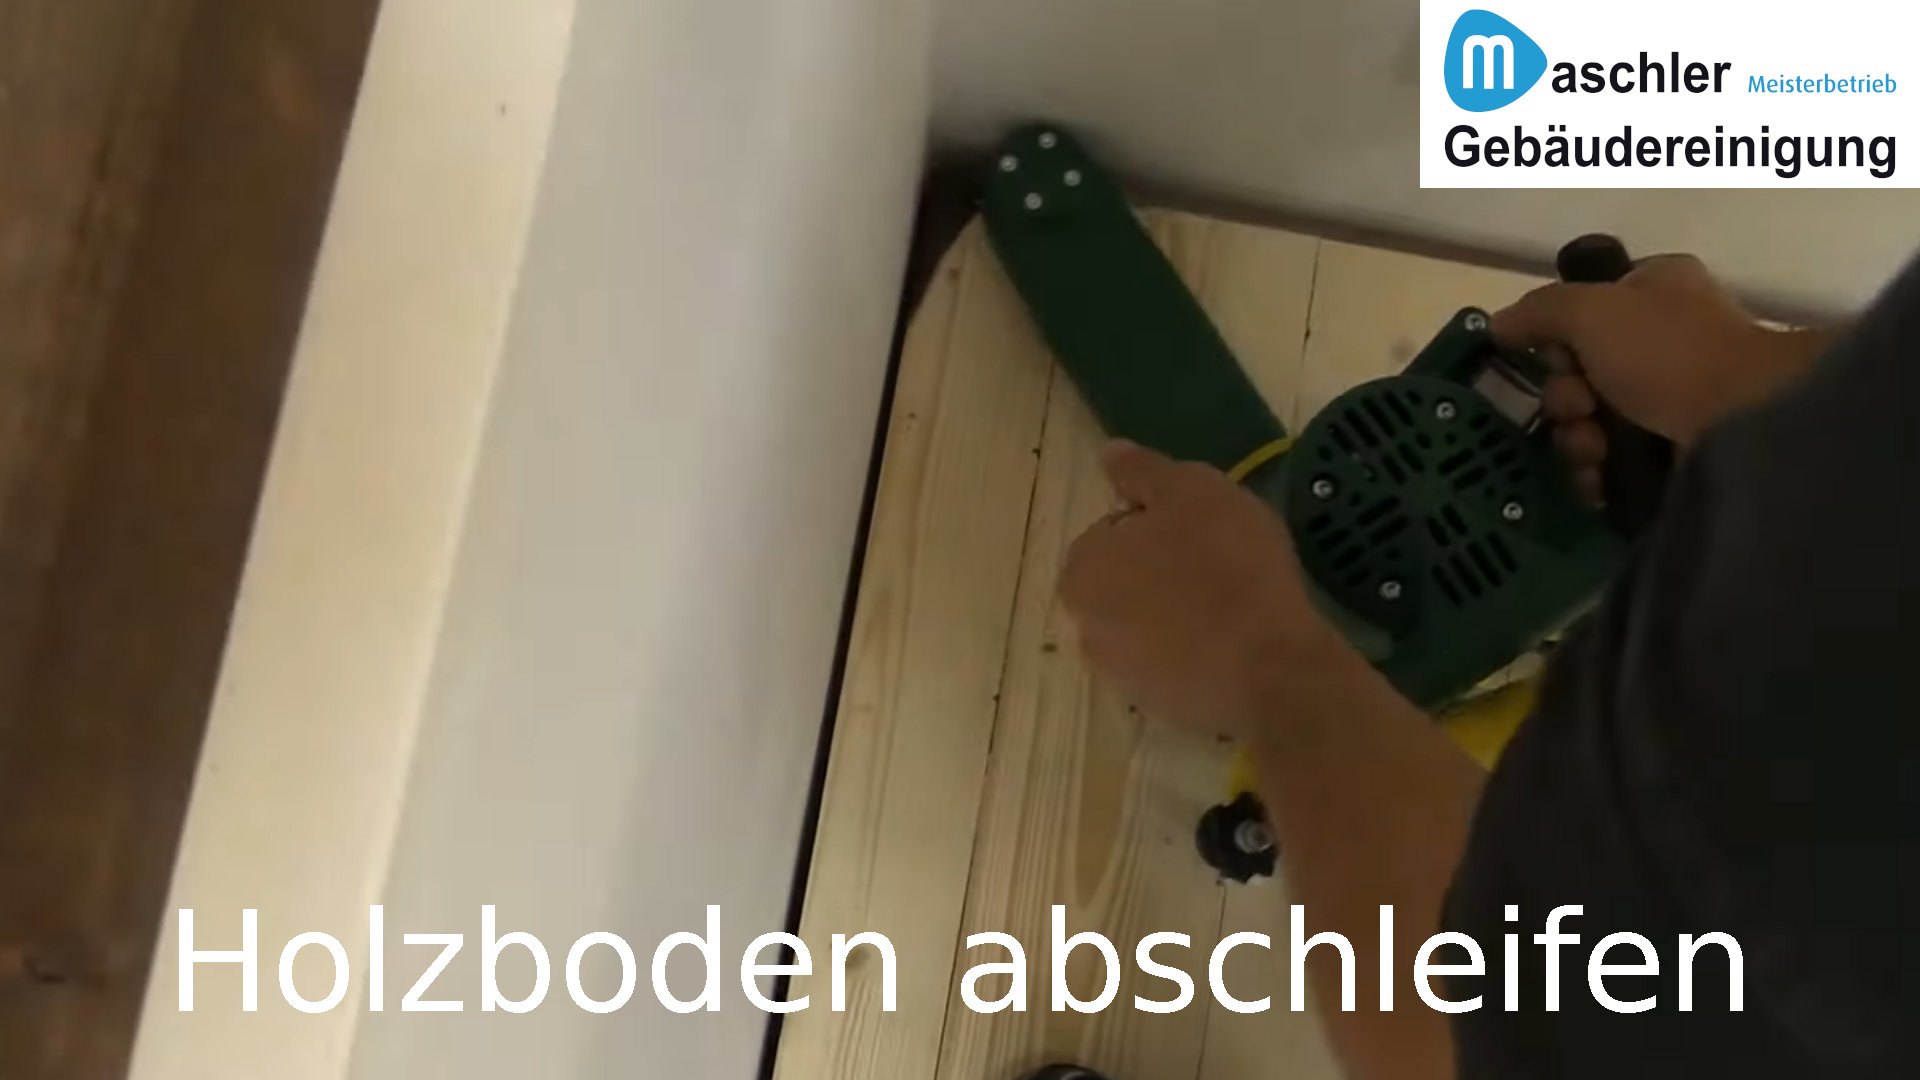 Holzboden abschleifen - Gebäudereinigung Maschler GmbH